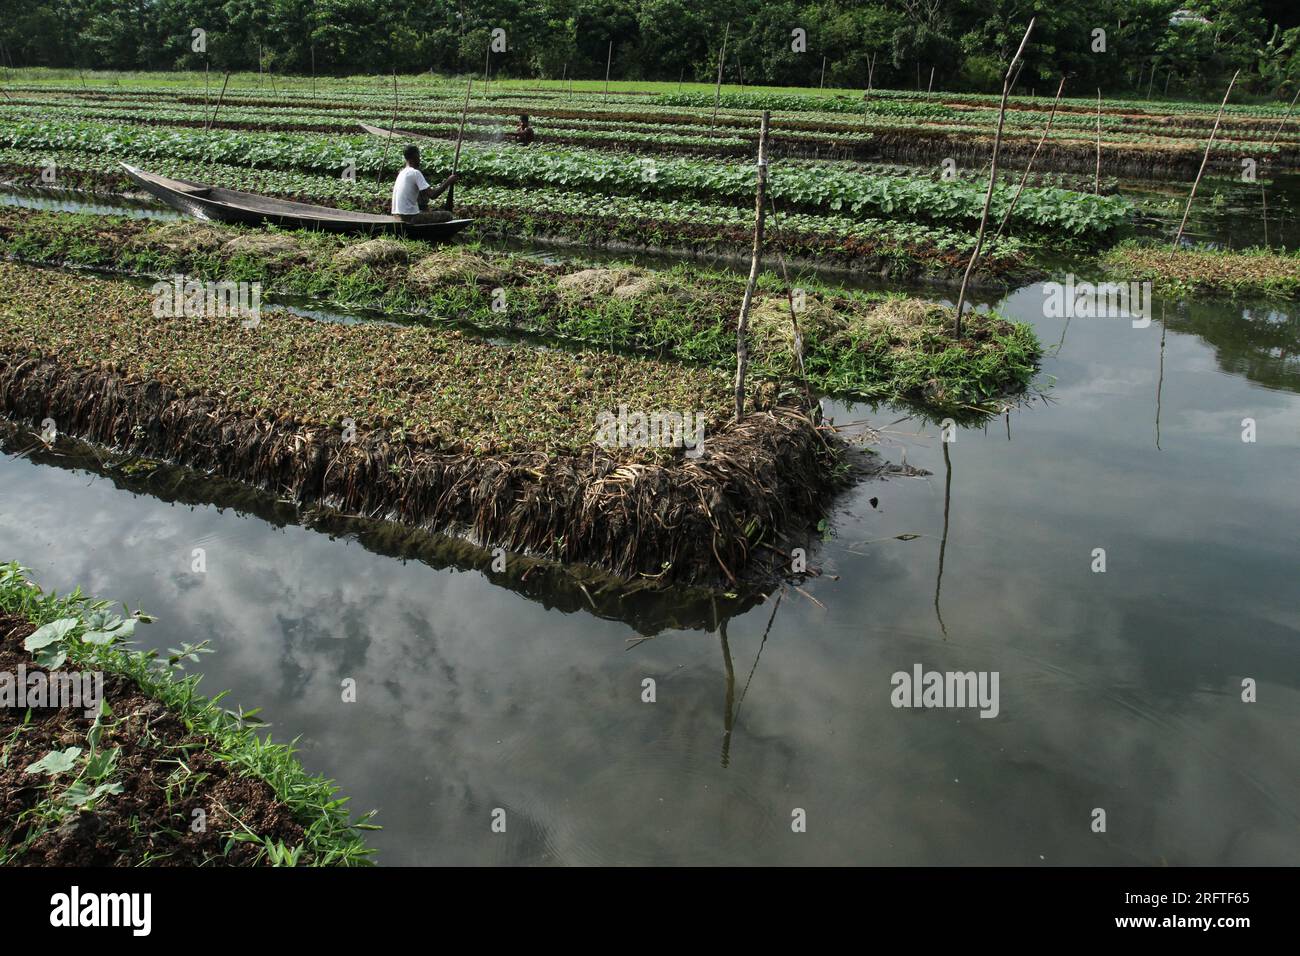 Die schwimmende Landwirtschaft ist eine traditionelle landwirtschaftliche Praxis in Bangladesch, die aus Pflanzenmaterial schwimmende Flöße in wasserdurchlässigen Gebieten herstellt. Stockfoto